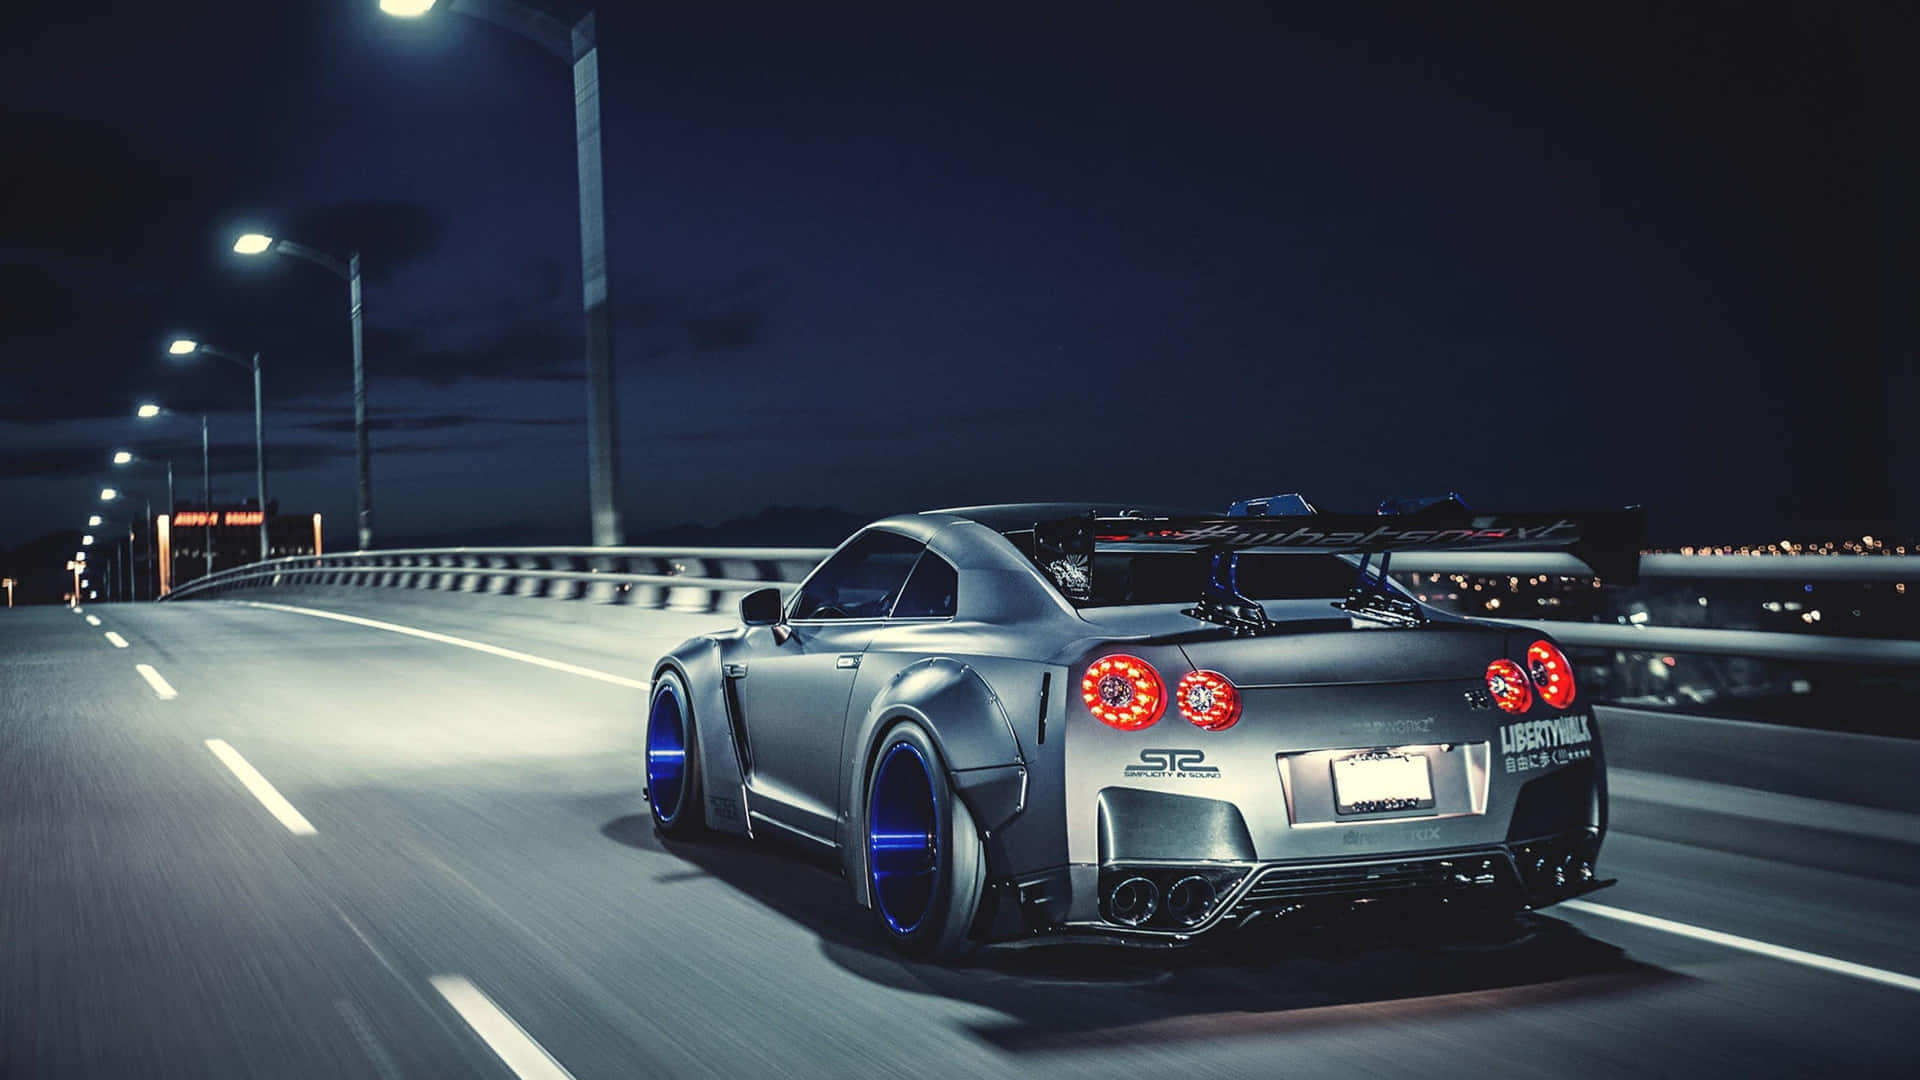 Capturala Velocidad Y El Diseño Del Increíble Nissan Skyline Fondo de pantalla